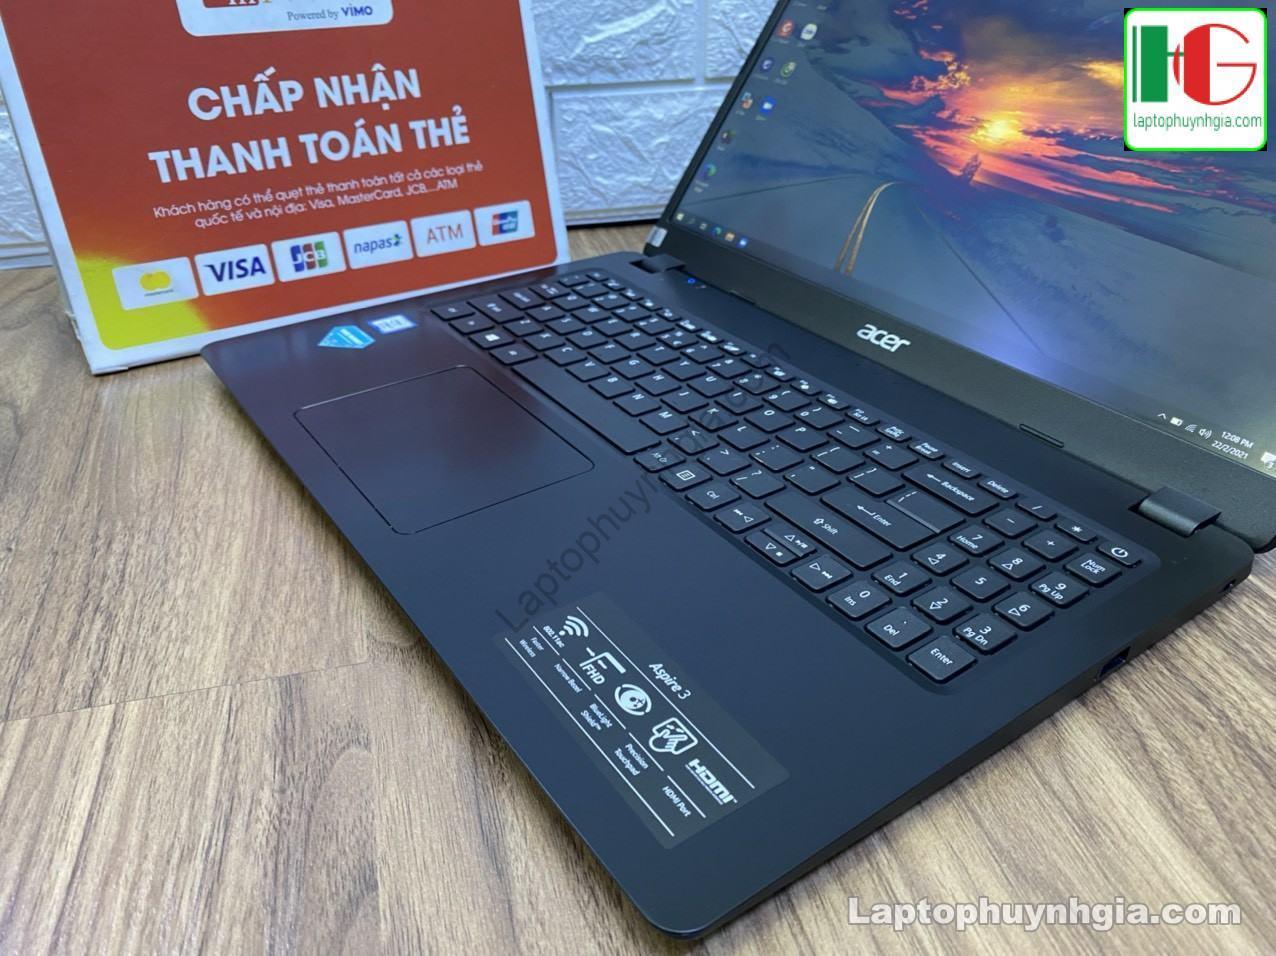 Acer A315 I3 8130u 4G SSD 256G LCD 15 laptophuynhgia.com 3 - Laptop Cũ Bình Dương Huỳnh Gia